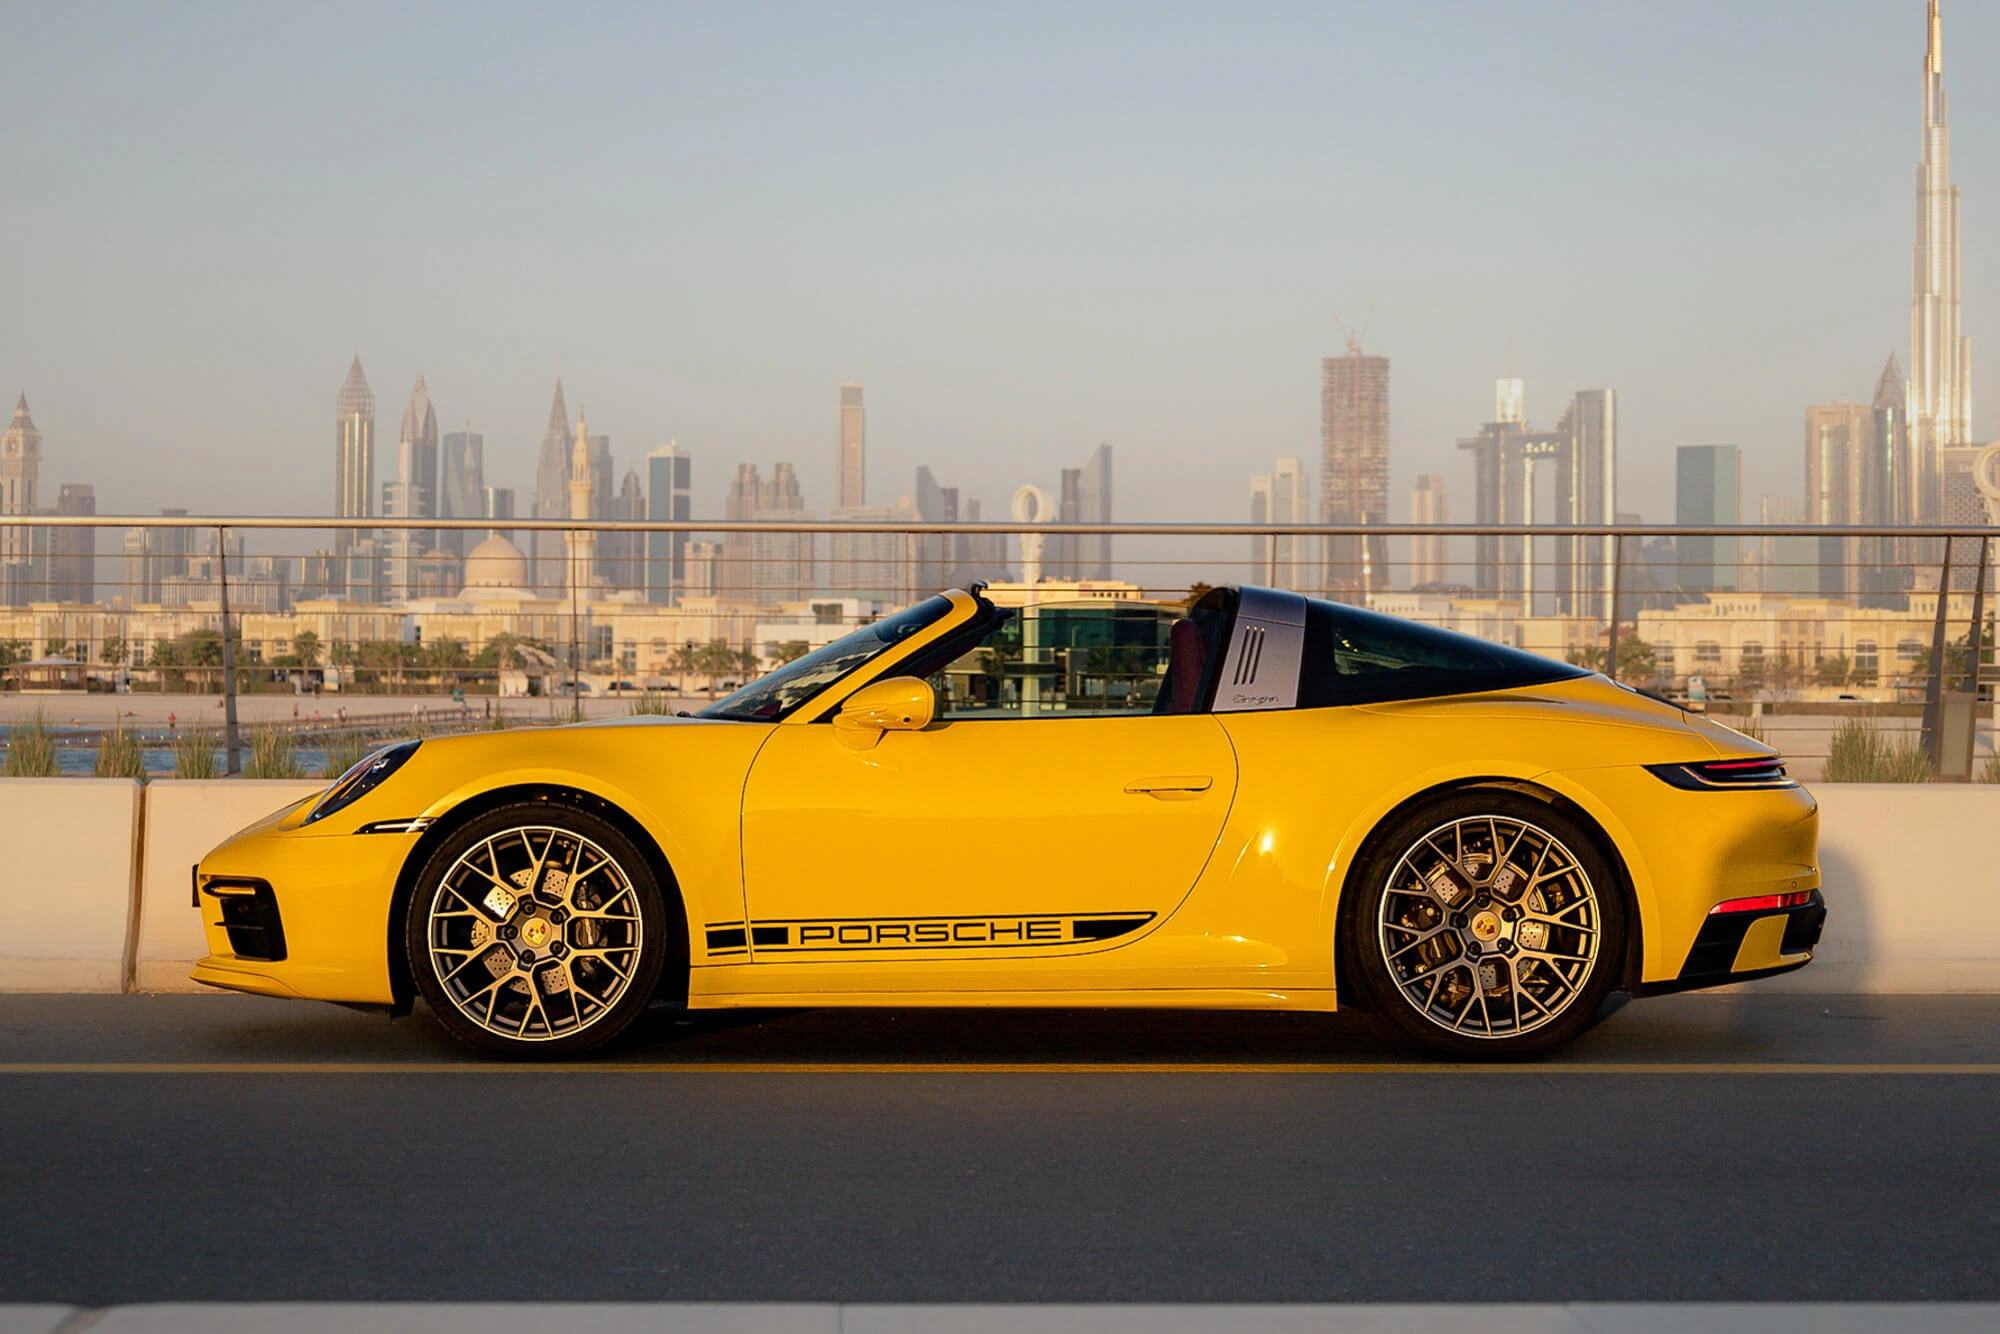 Porsche 911 Targa 4 Yellow